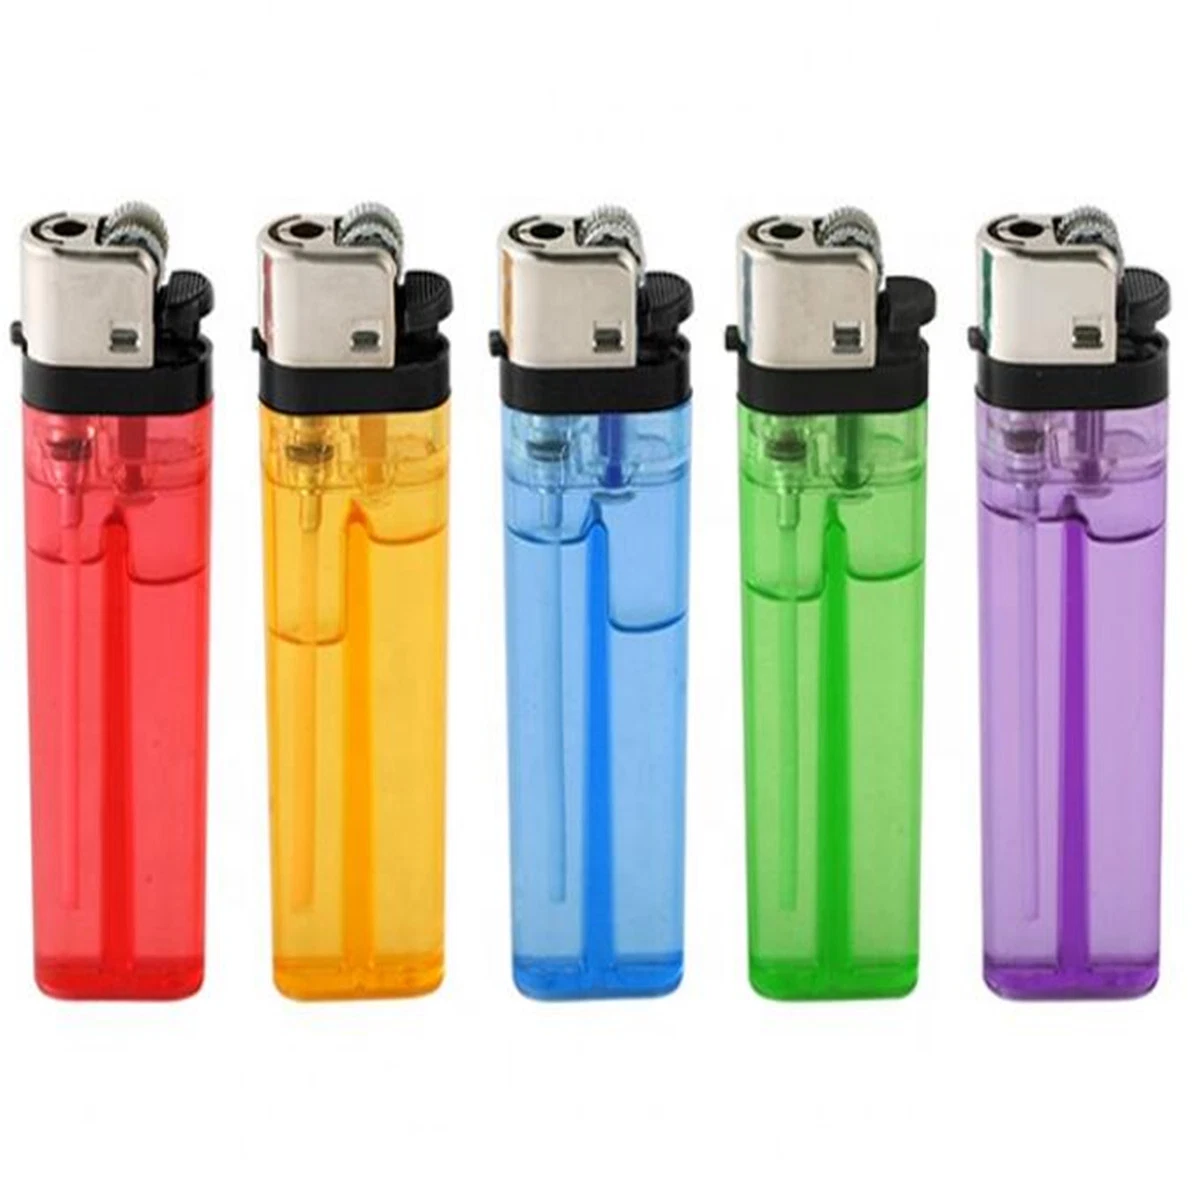 Cheap Lighter Disposable Refillable Customs Lighter Gas Flint Lighter